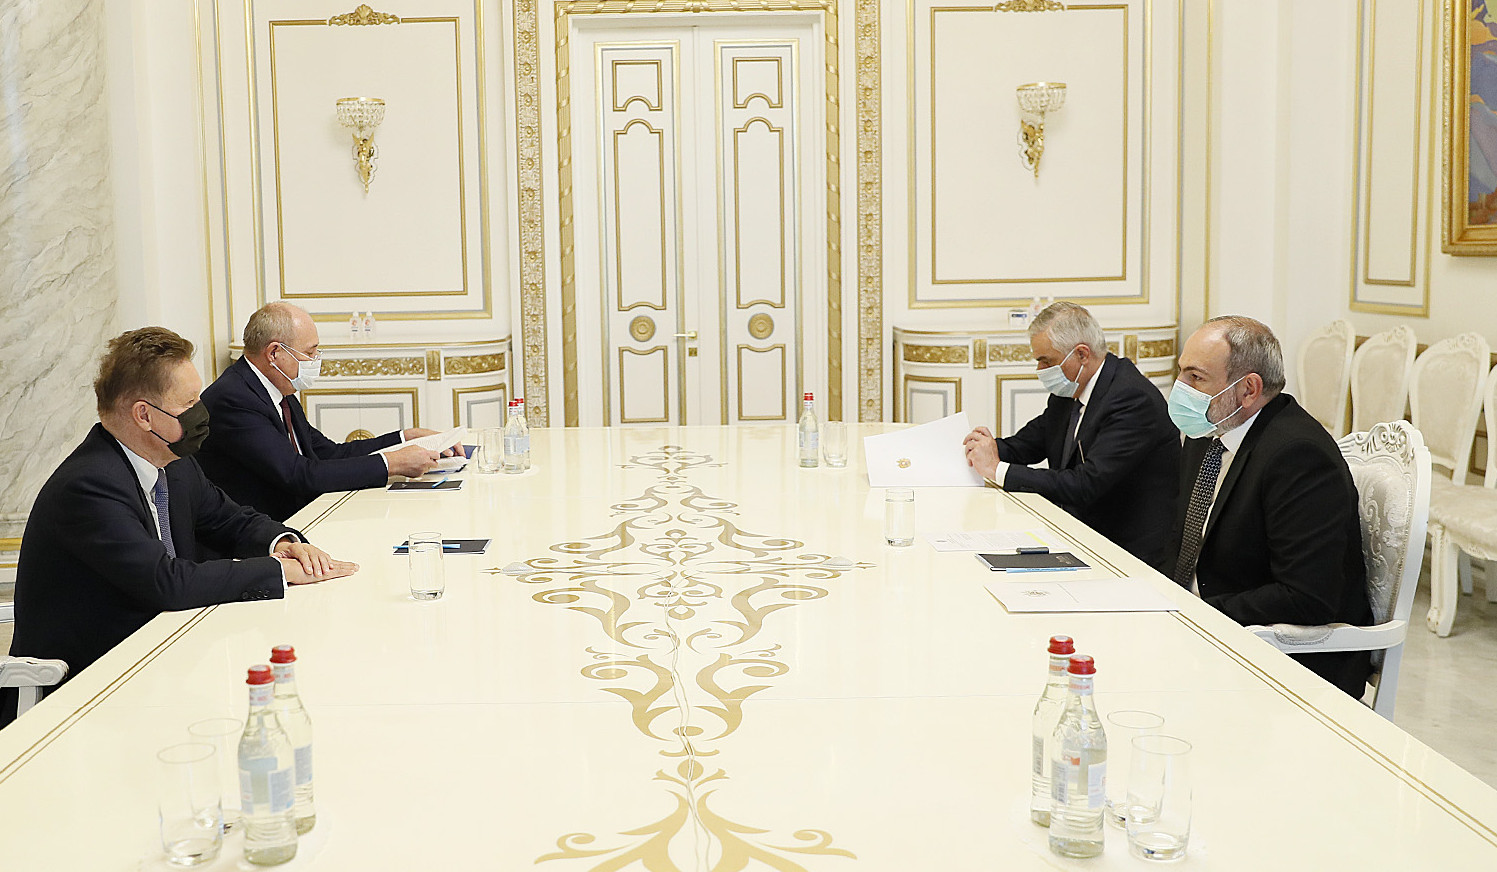 Նիկոլ Փաշինյանը և Ալեքսեյ Միլլերը քննարկել են հայ-ռուսական էներգետիկ գործընկերության հարցեր